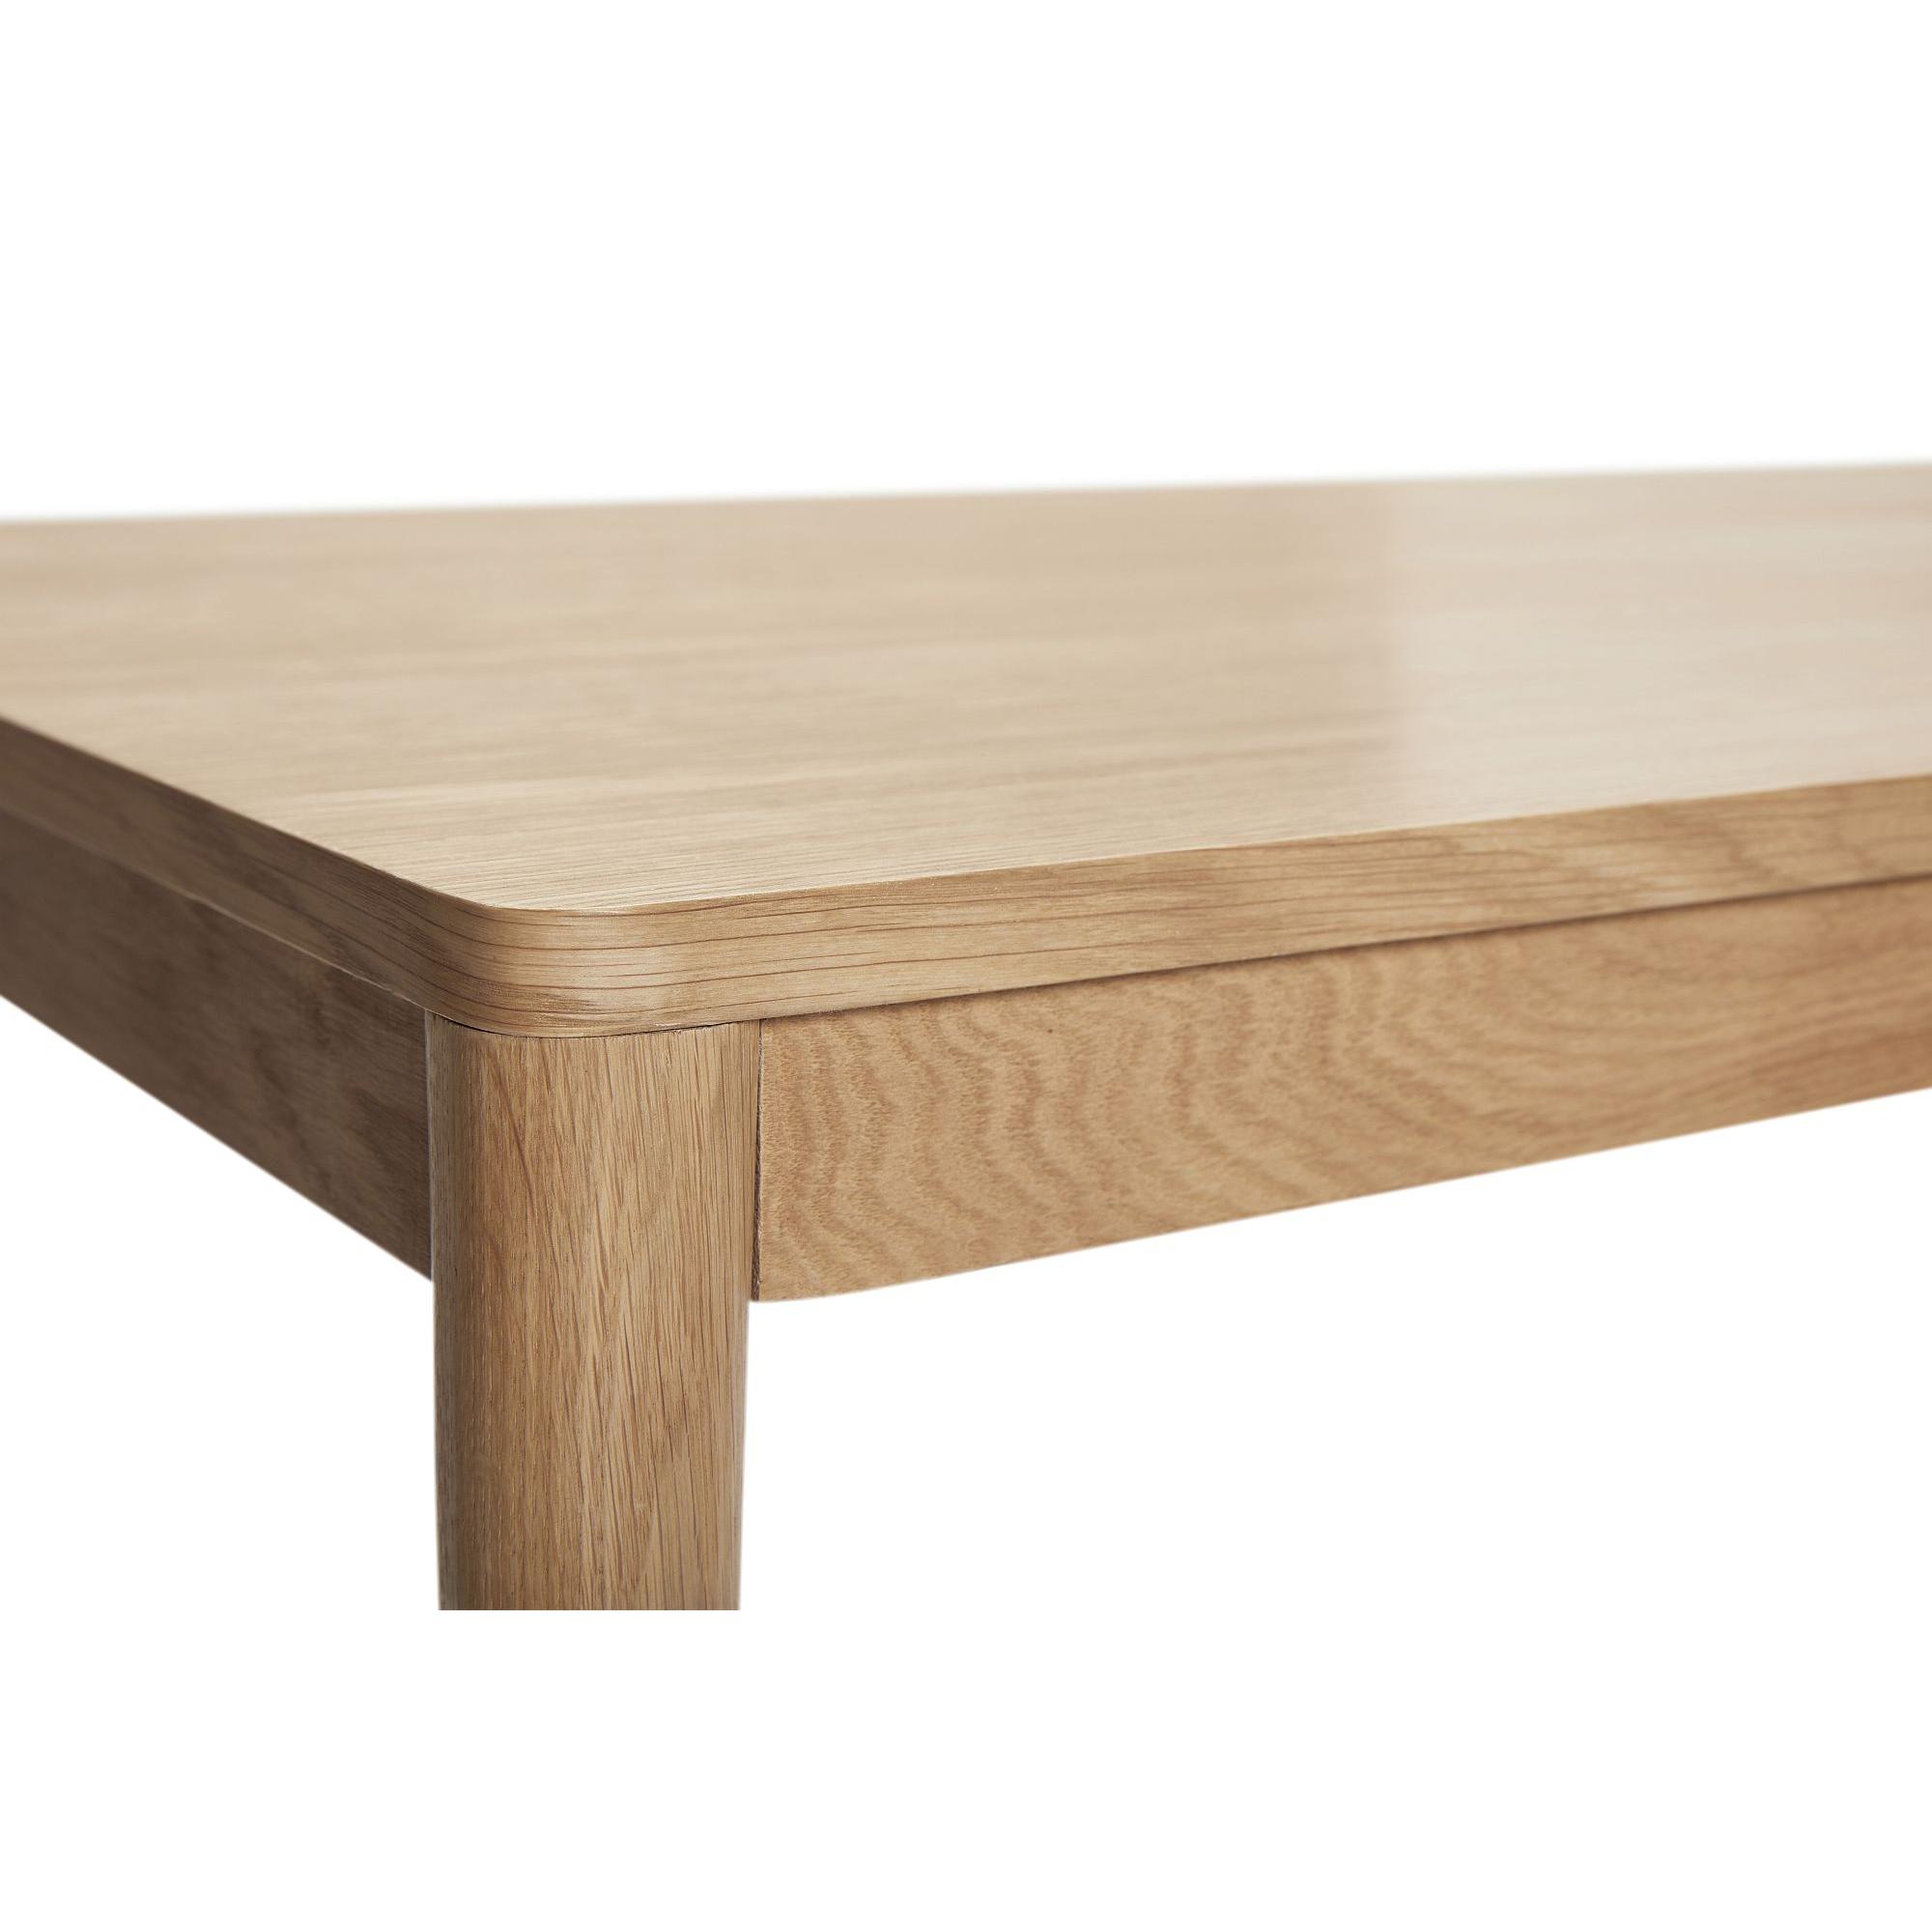  Acorn - Spisebord i egetræ 140 cm. fra Hübsch Interiør i Egetræ, Egefinér (Varenr: 880705F)